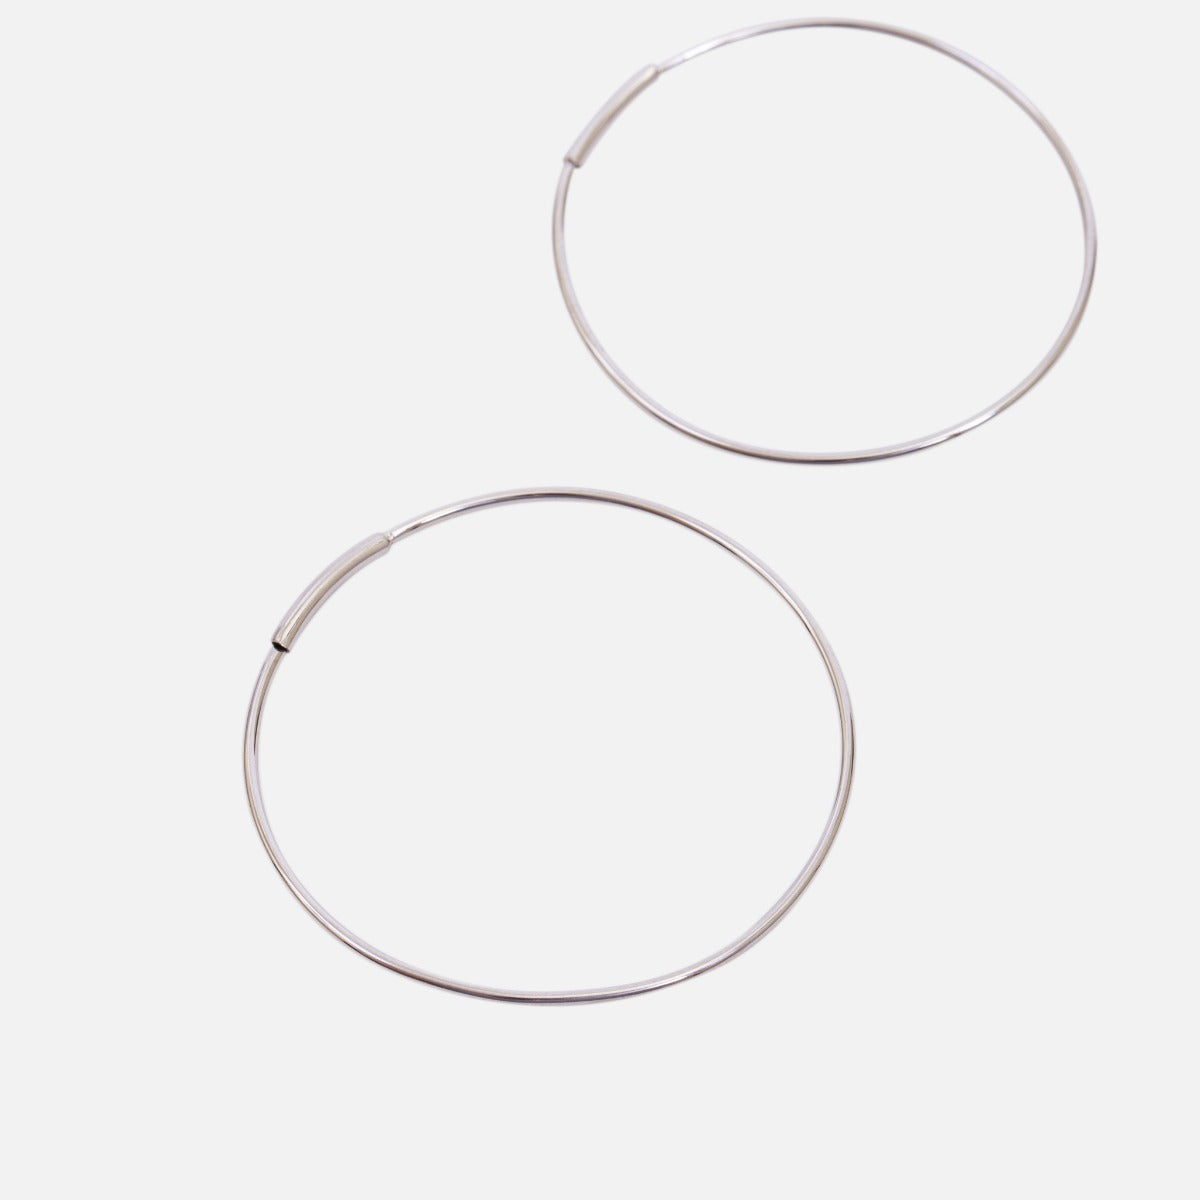 35 mm silver stainless steel hoop earrings